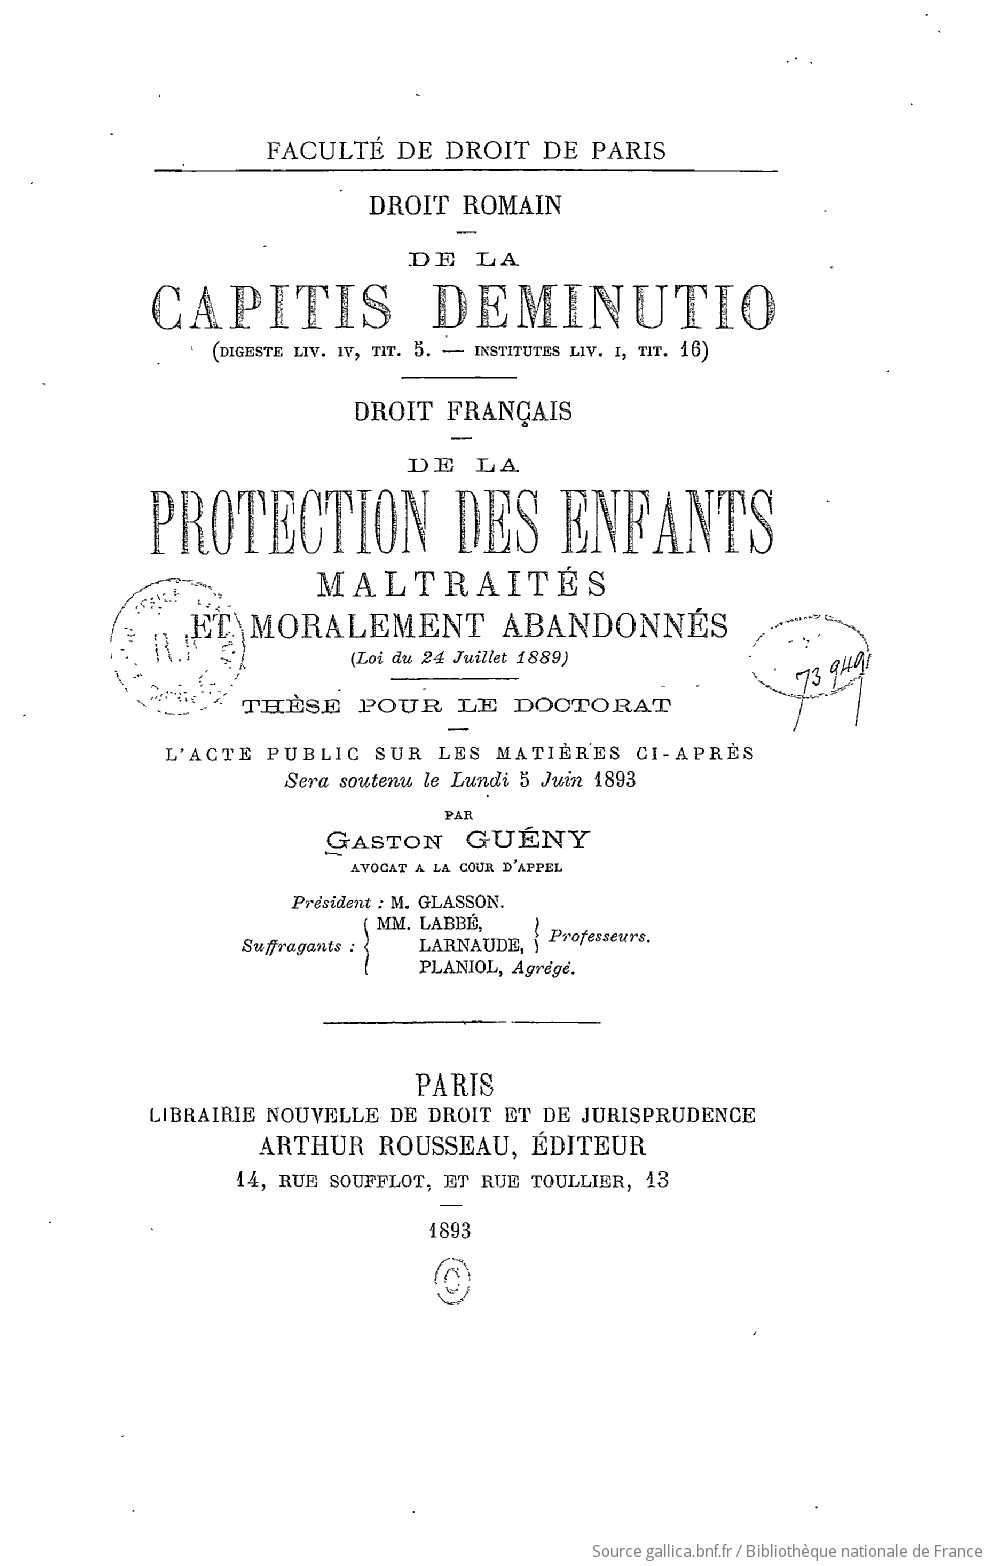 Droit français : de la Protection des enfants maltraités et moralement abandonnés (loi du 24 juillet 1889) [Thèse pour le doctorat]